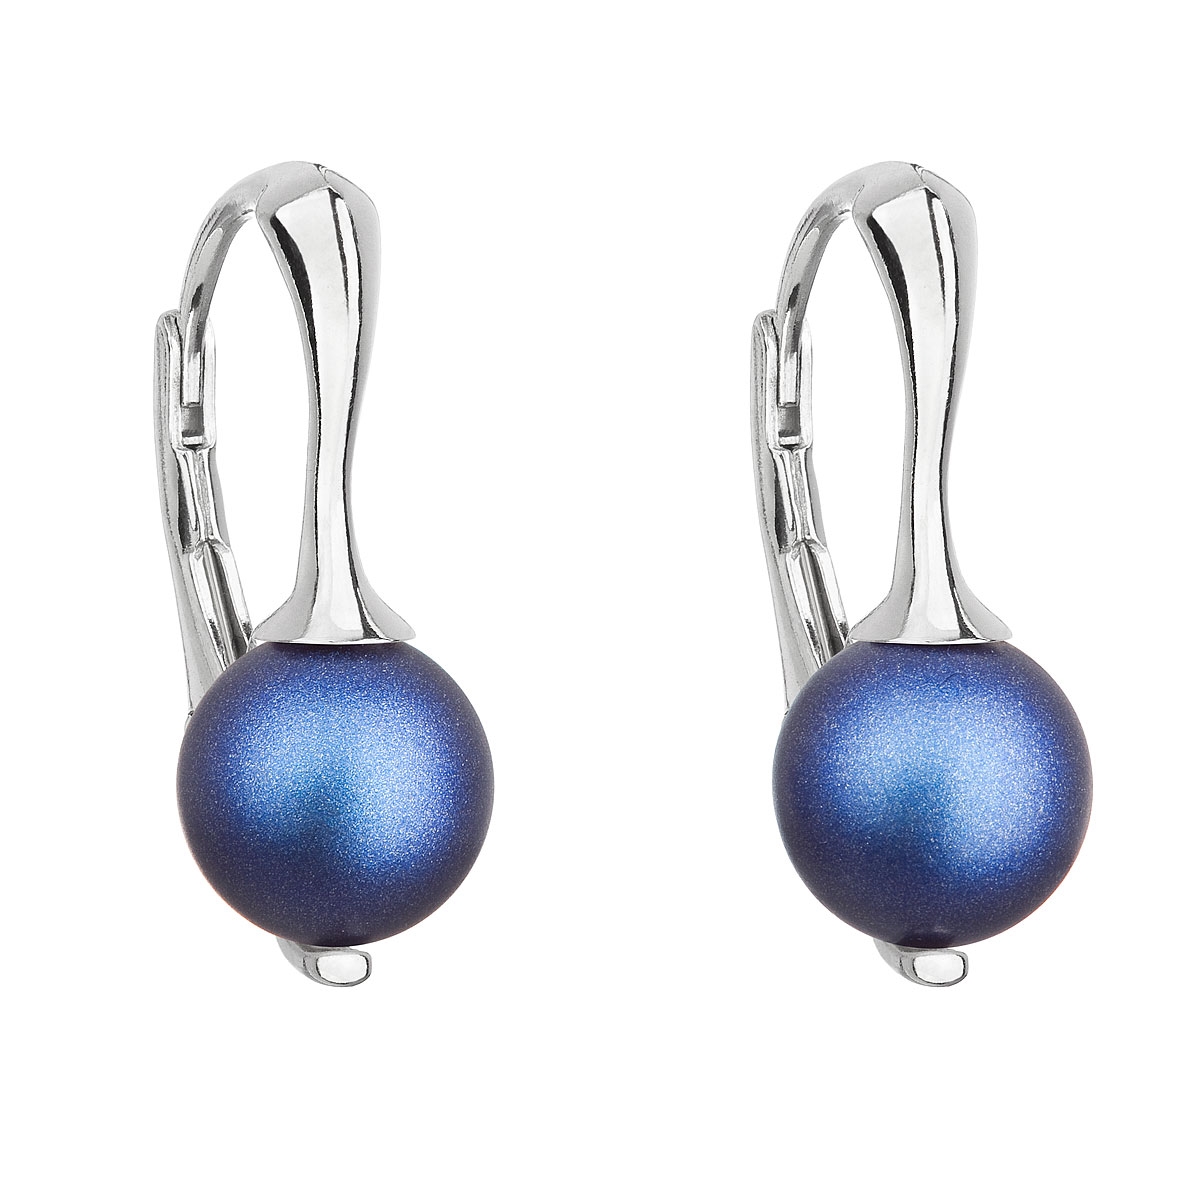 Strieborné náušnice s matnými perlami Crystals from Swarovski ® Dark Blue